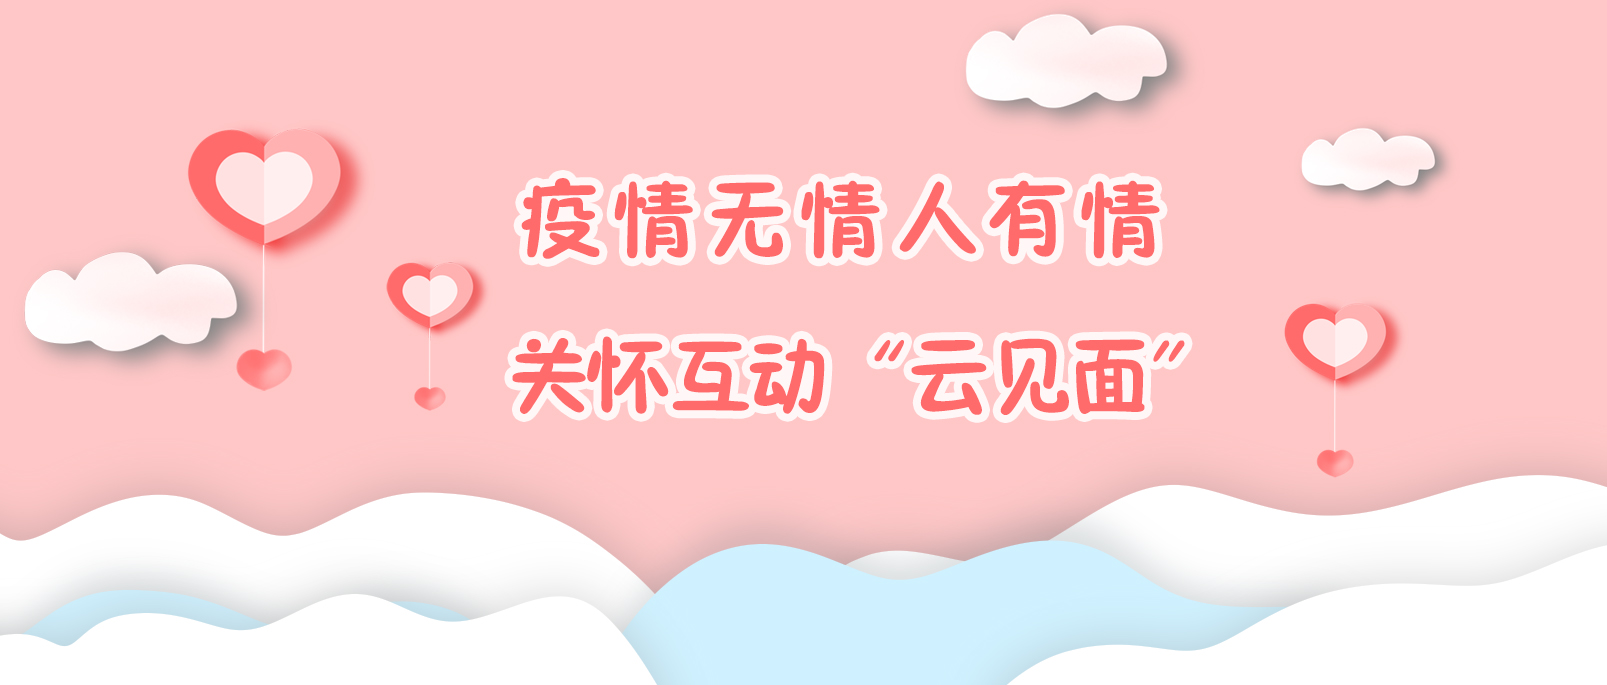 线上云见面，携手渡疫情——国惠上海总部小伙伴的居家抗疫分享